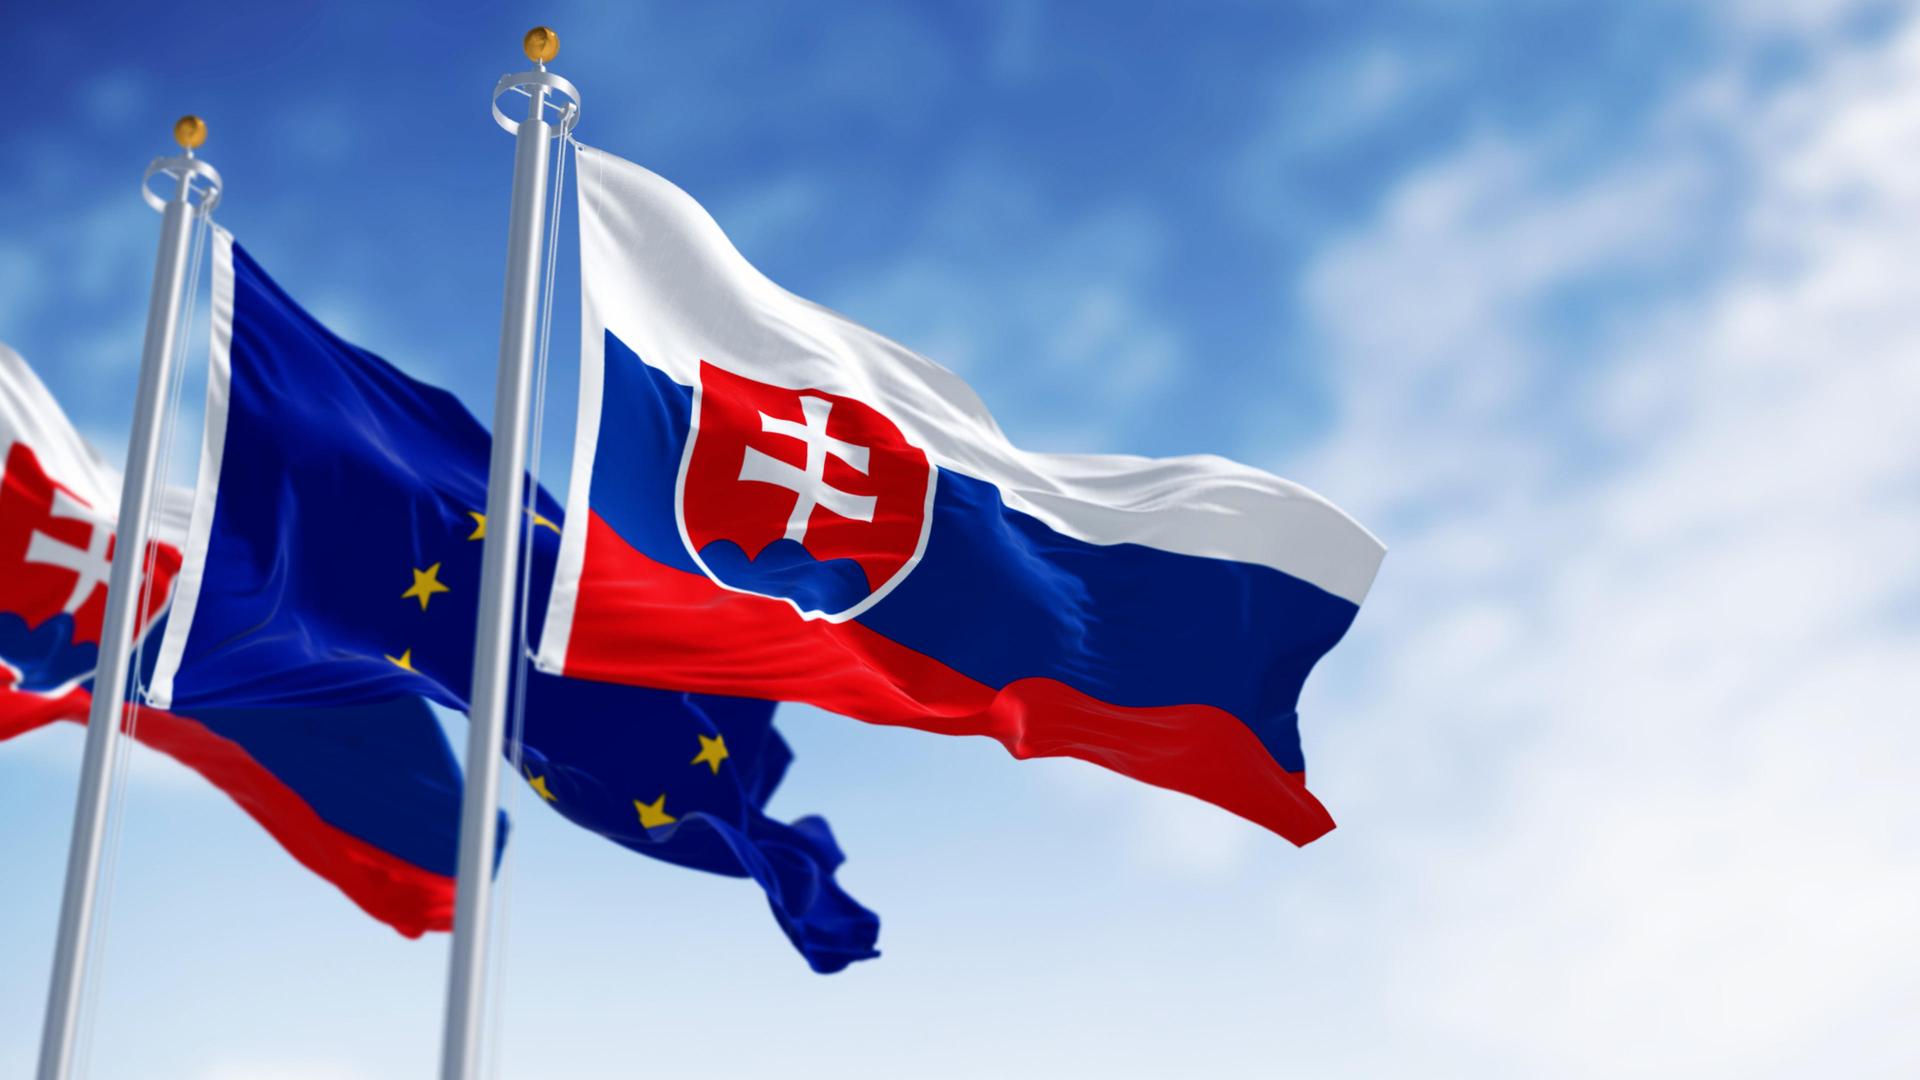 Die Flaggen der Slovakei and der Europäischen Union wehen im Wind